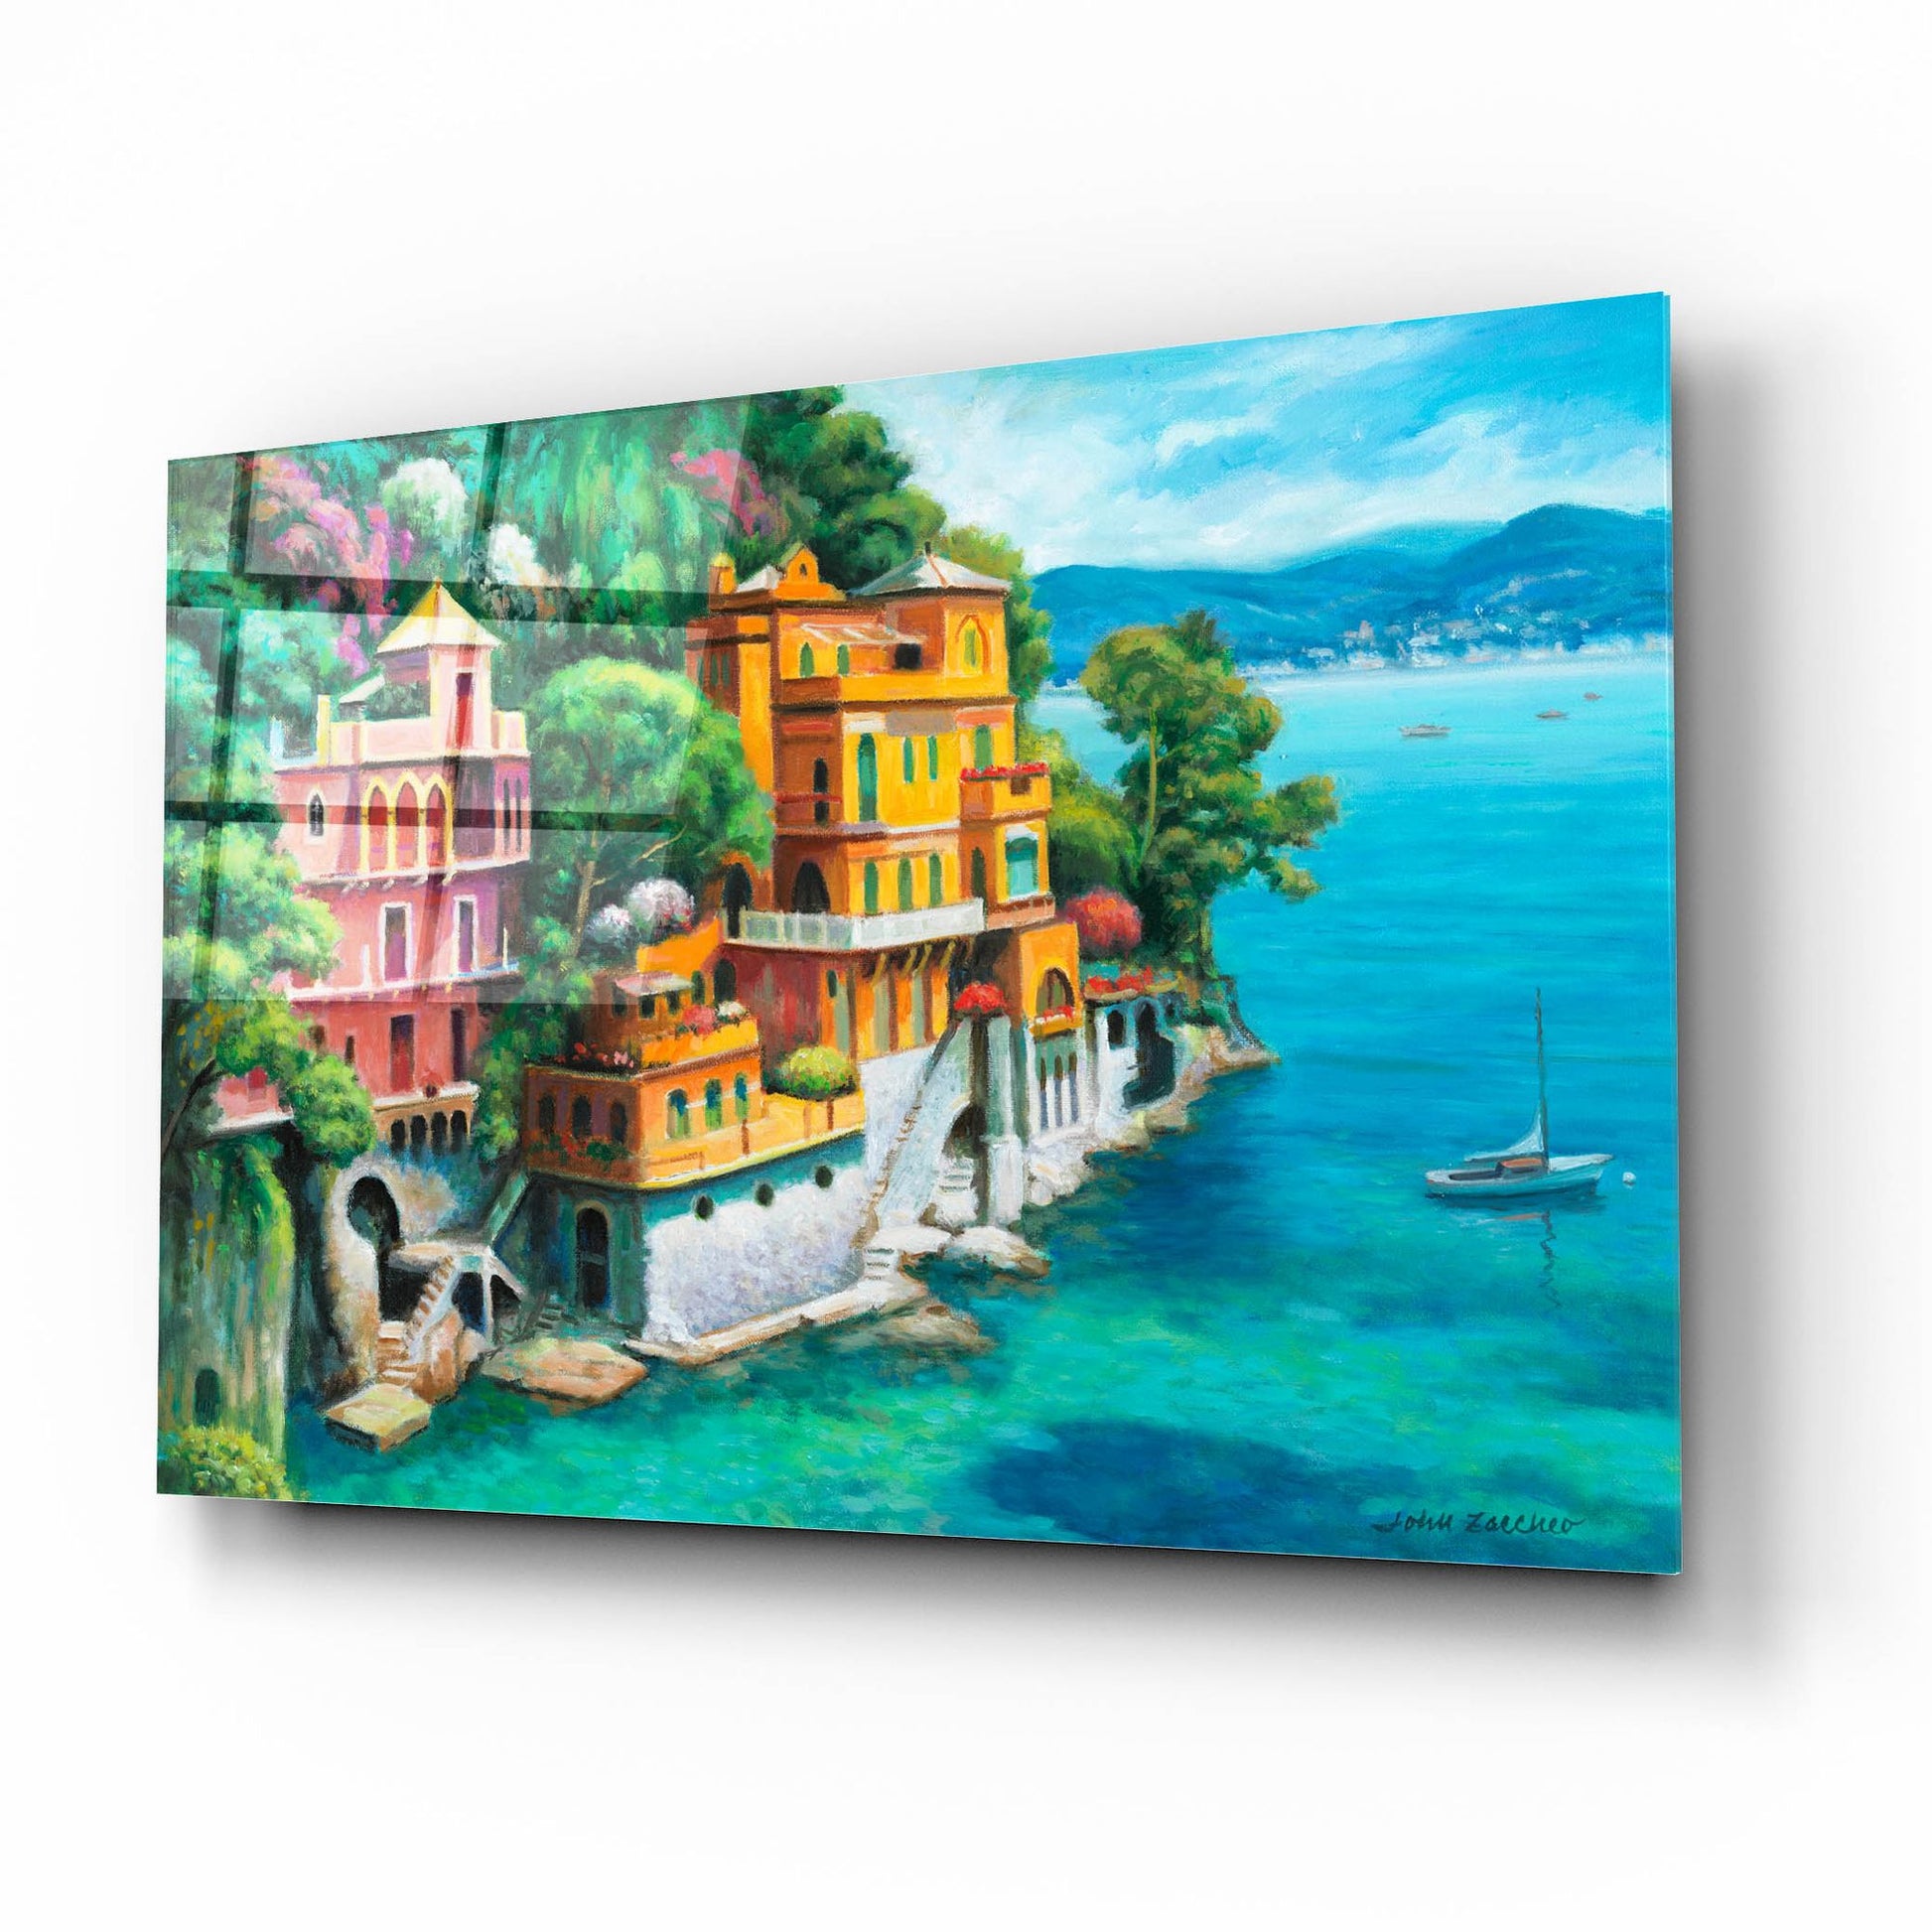 Epic Art 'Domina Beach Portofino Italy' by John Zaccheo, Acrylic Glass Wall Art,16x12